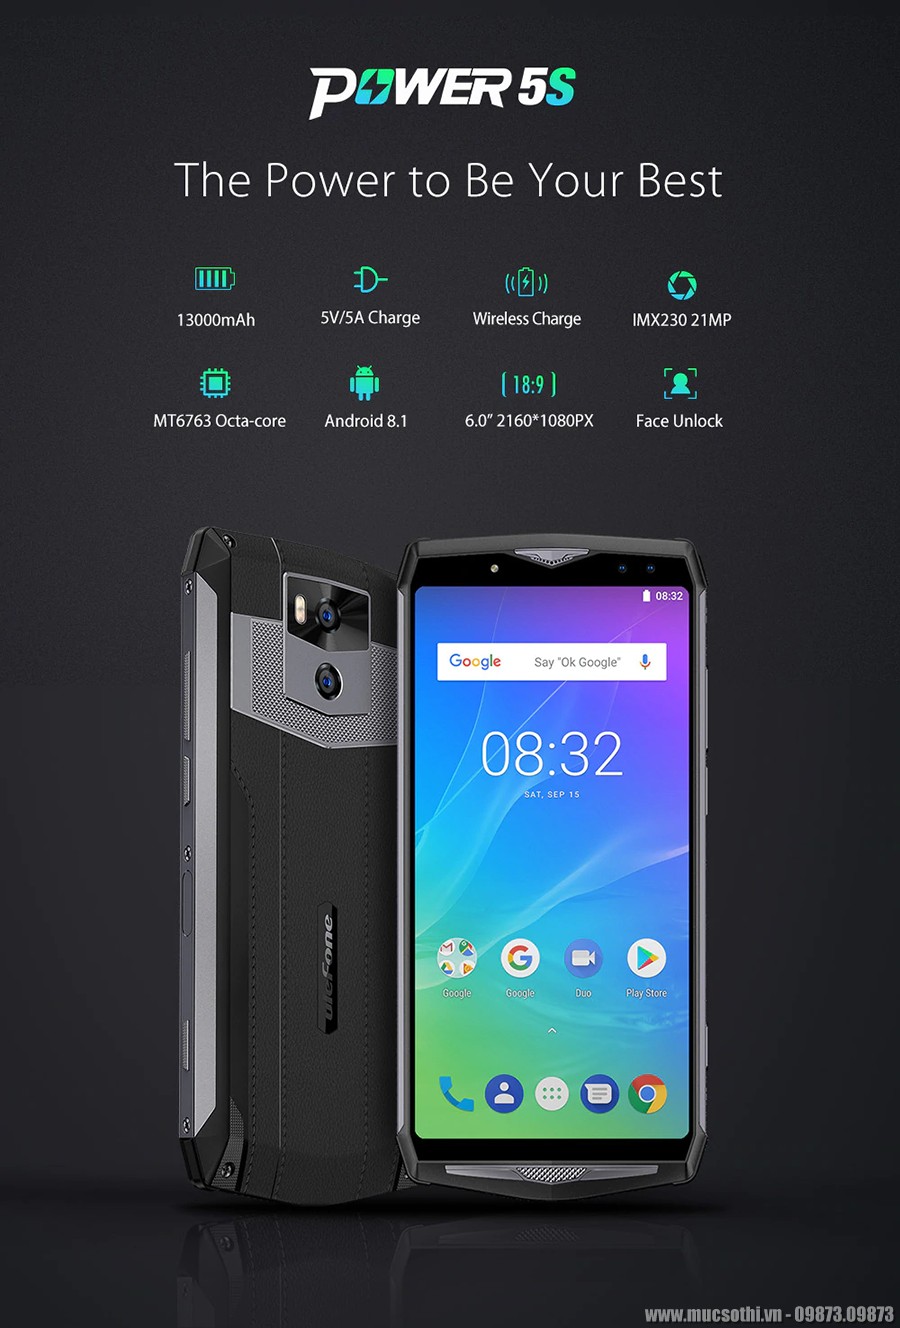 smartphonestore.vn - chuyên cung cấp lẻ giá sỉ, online giá tốt điện thoại ulefone power 5s pin khủng chính hãng - 09175.09195